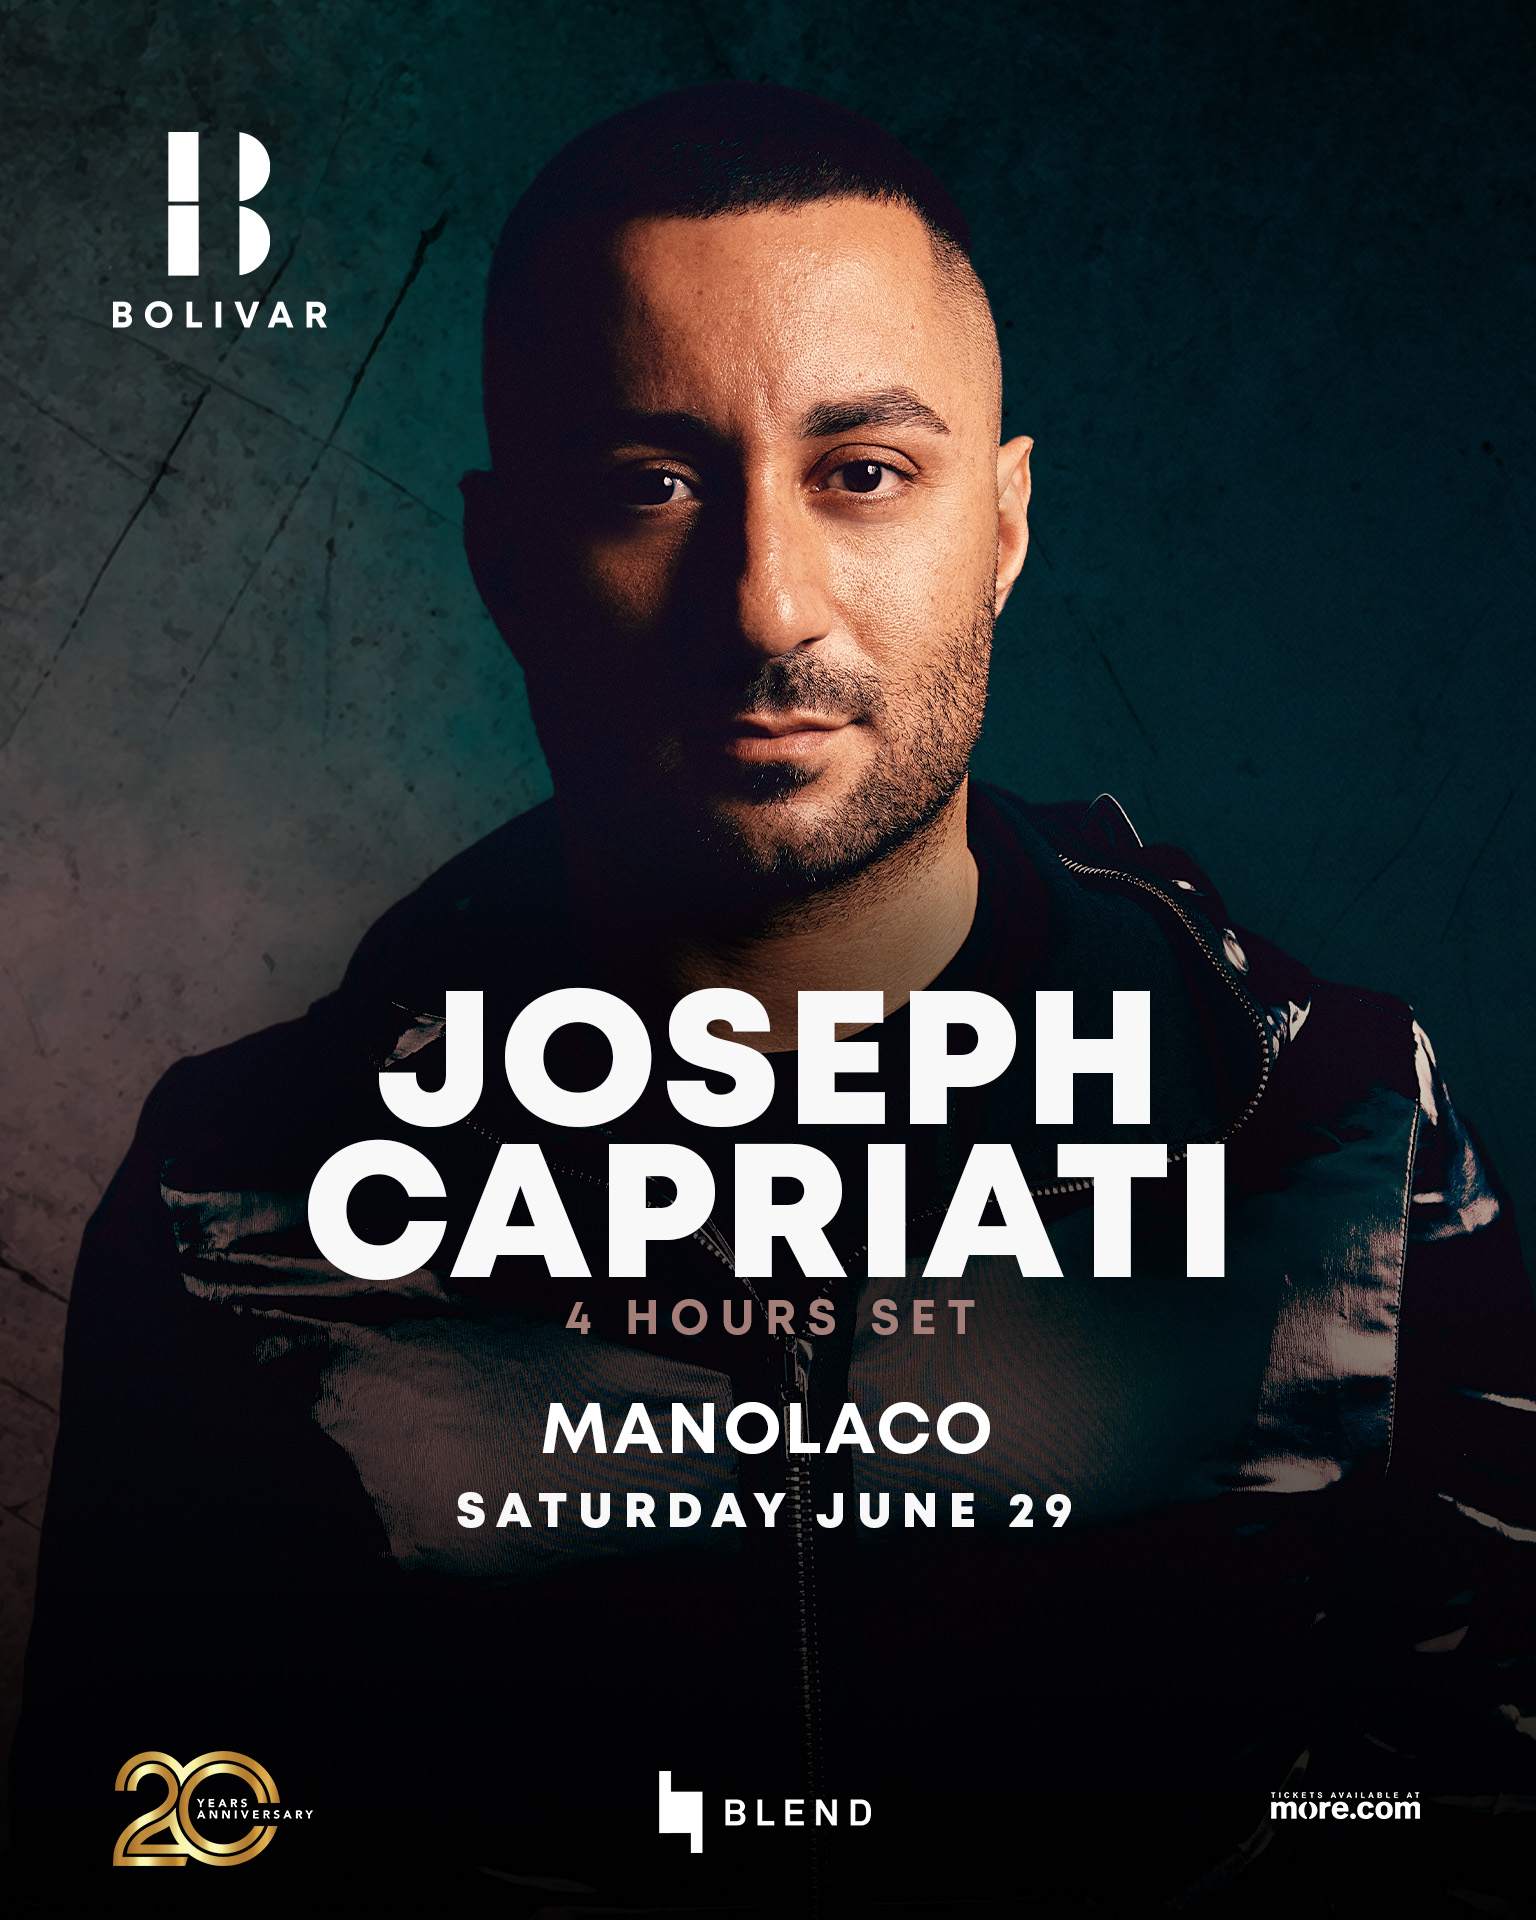 Joseph Capriati Saturday June 29 Bolivar - フライヤー裏